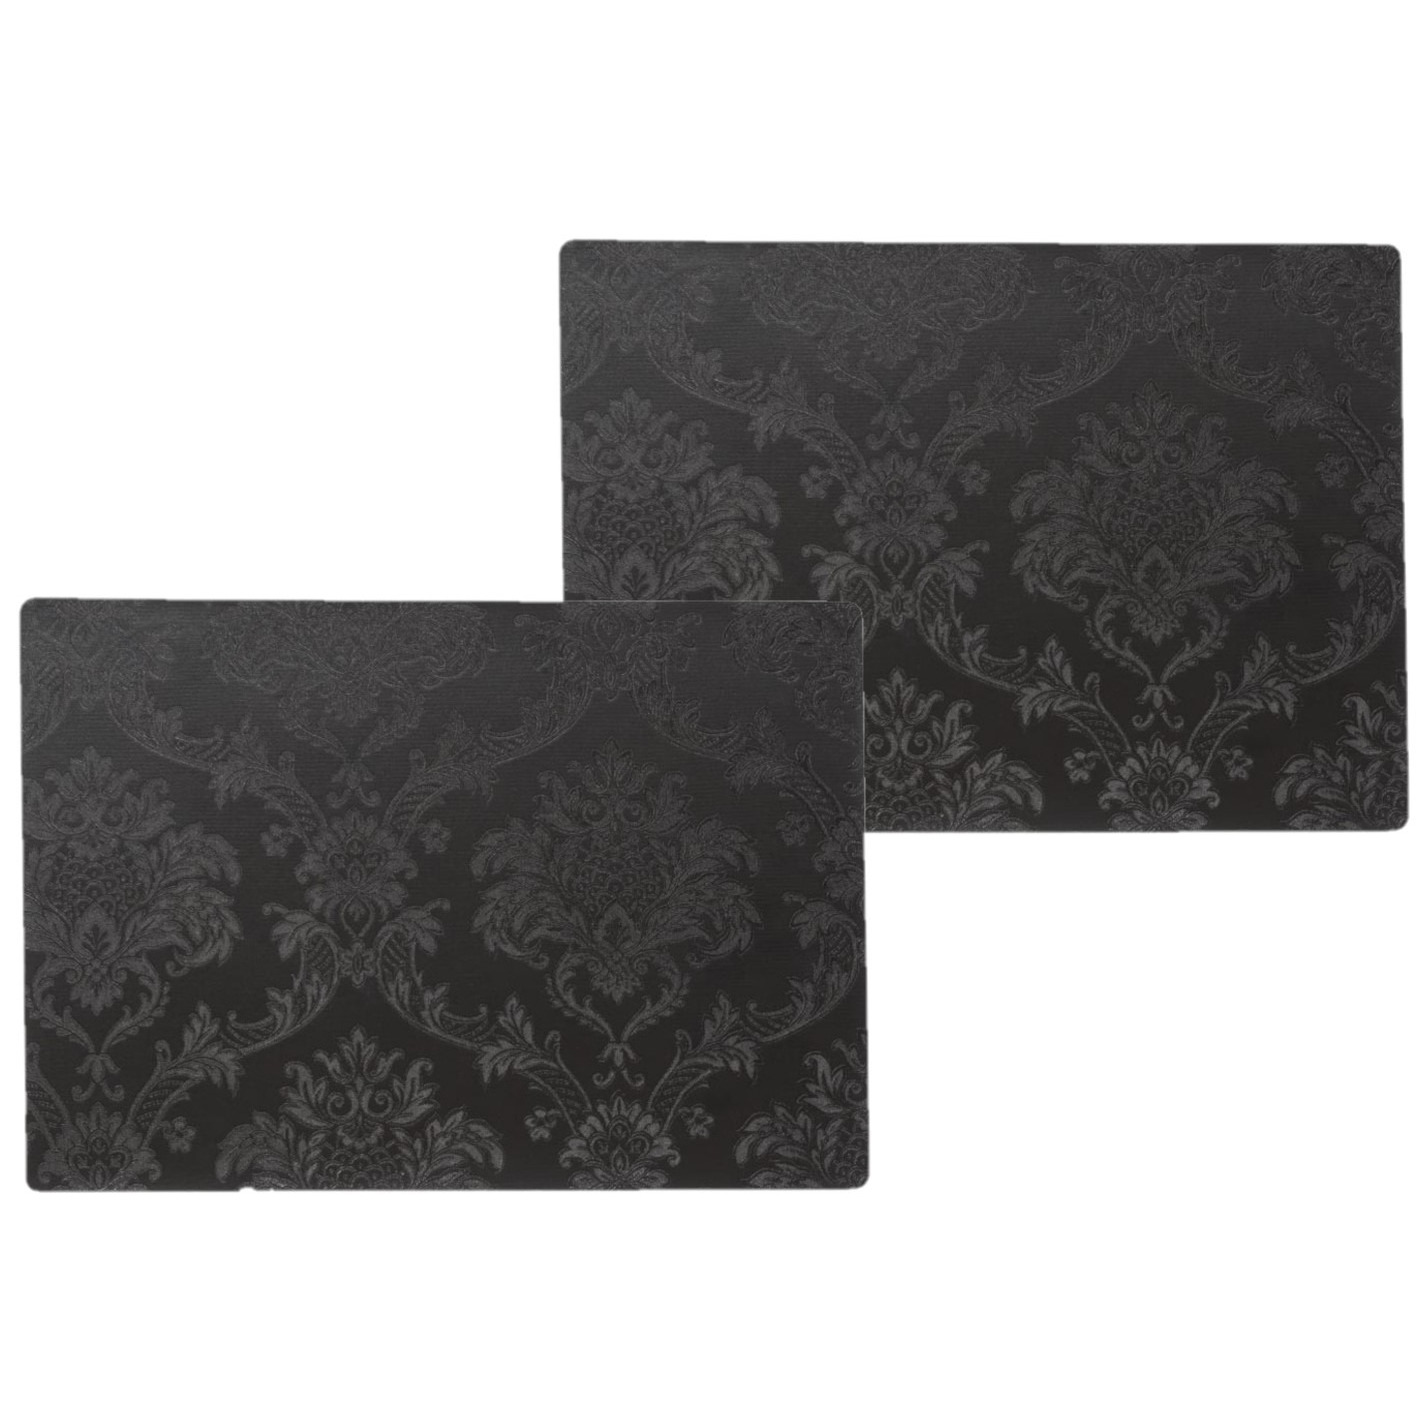 Wicotex 10x stuks stevige luxe Tafel placemats Amatista zwart 30 x 43 cm -